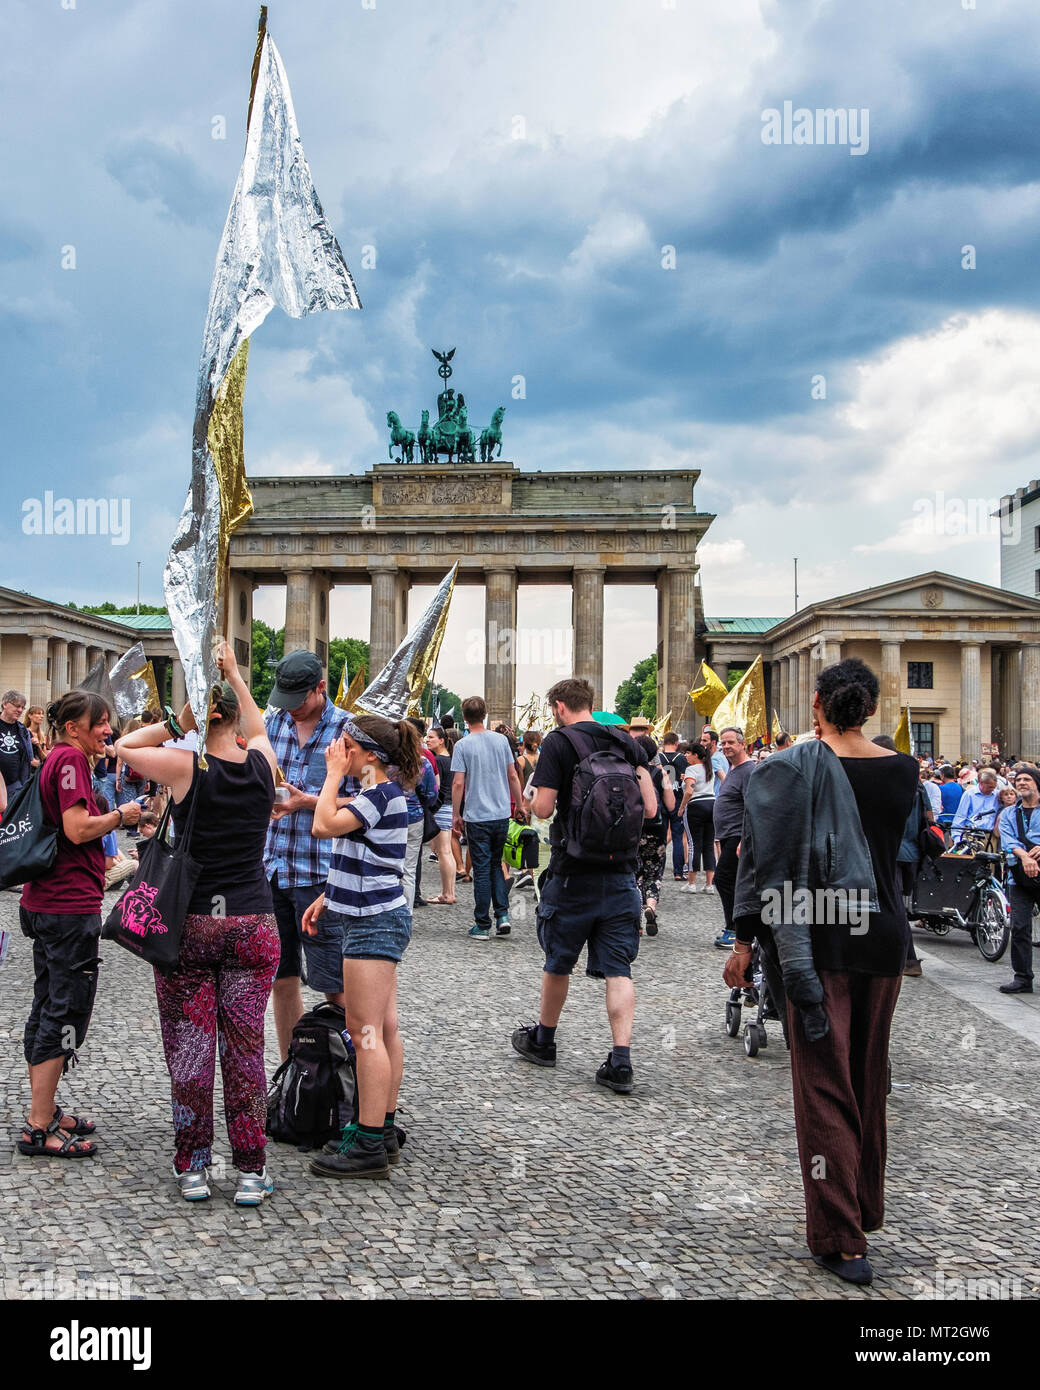 La germania,Berlin-Mitte, 27 maggio 2018. Shining dimostrazione da parte del 'Tanti' contro la nazione a livello di destra demo AFD nello stesso giorno. Manifestanti assemblato nel parco Weinberg vestito in abiti splendenti e portante shiny banner e bandiere i dimostranti hanno marciato dal parco attraverso Mitte alla Porta di Brandeburgo per protestare contro il razzismo, l'antisemitismo, il fascismo e il nazismo. Il molti è un'associazione di artisti,ensemble e gruppi di attori che si oppongono all' estremismo di destra e il supporto per la democrazia e una diversa società. Credito: Eden Breitz/Alamy Live News Foto Stock